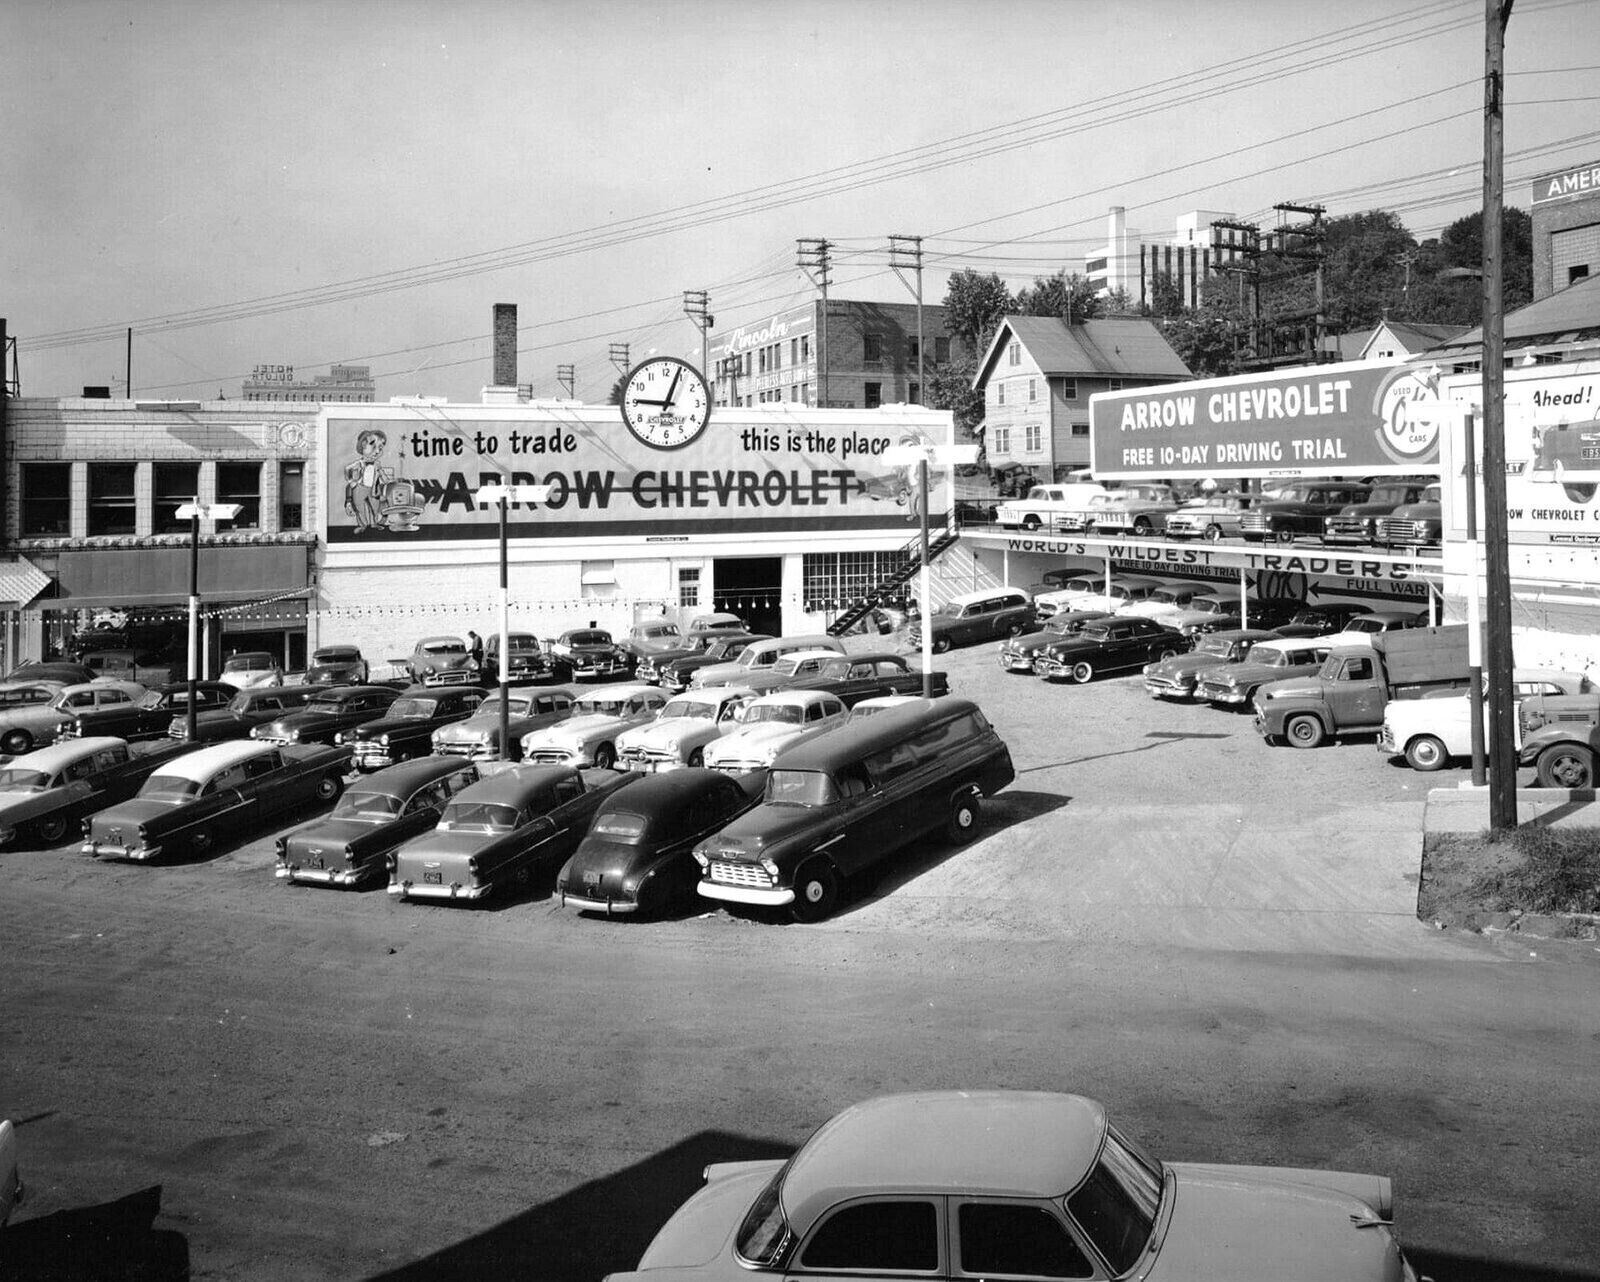 1955 CHEVROLET DEALER Classic Car Sales Lot Retro Historic Picture Photo 5x7